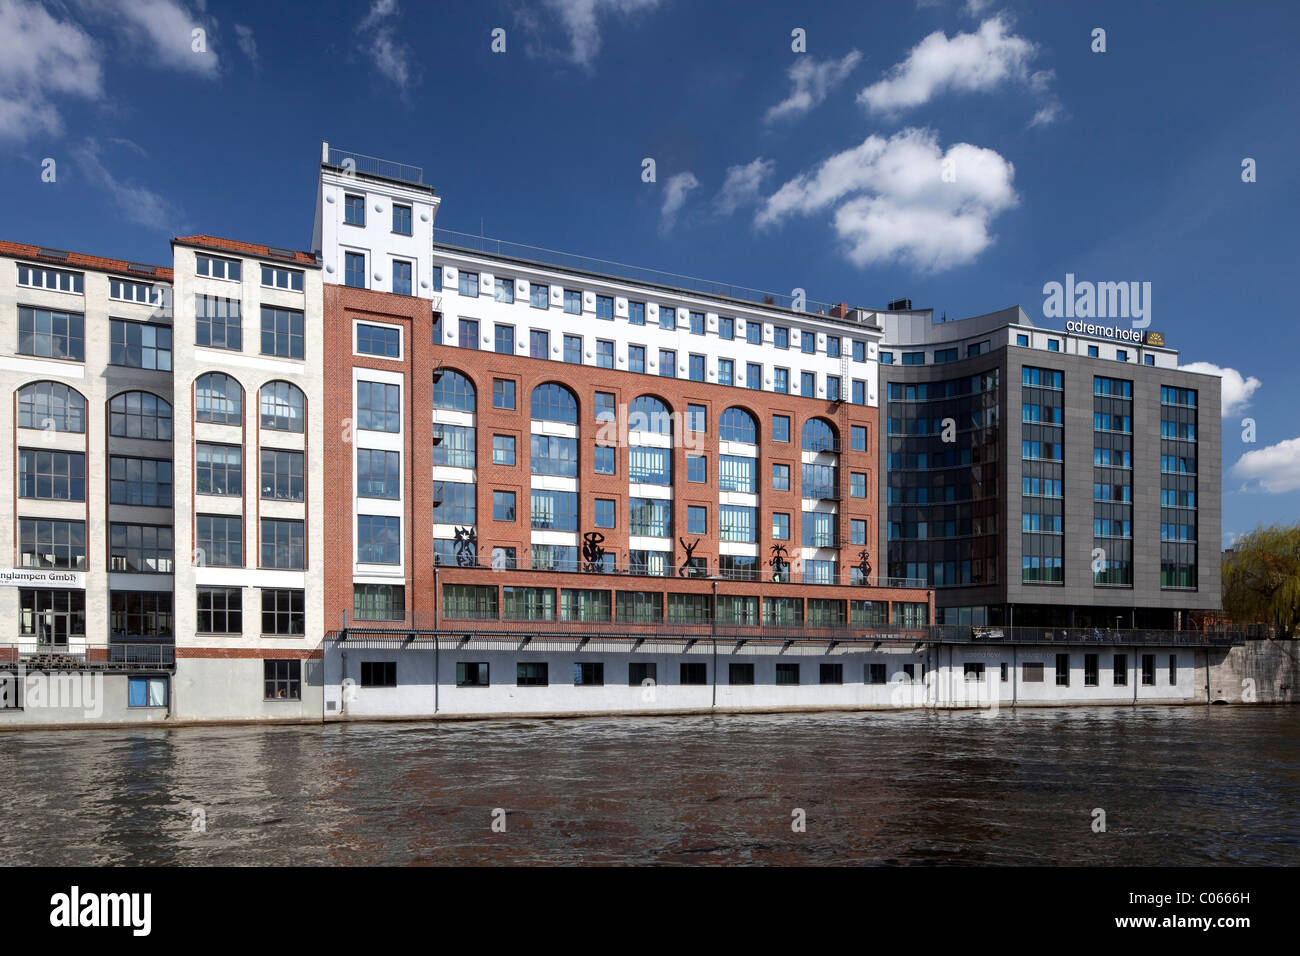 Immeuble de bureaux sur les bords de la rivière Spree, Charlottenburg, Berlin, Germany, Europe Banque D'Images